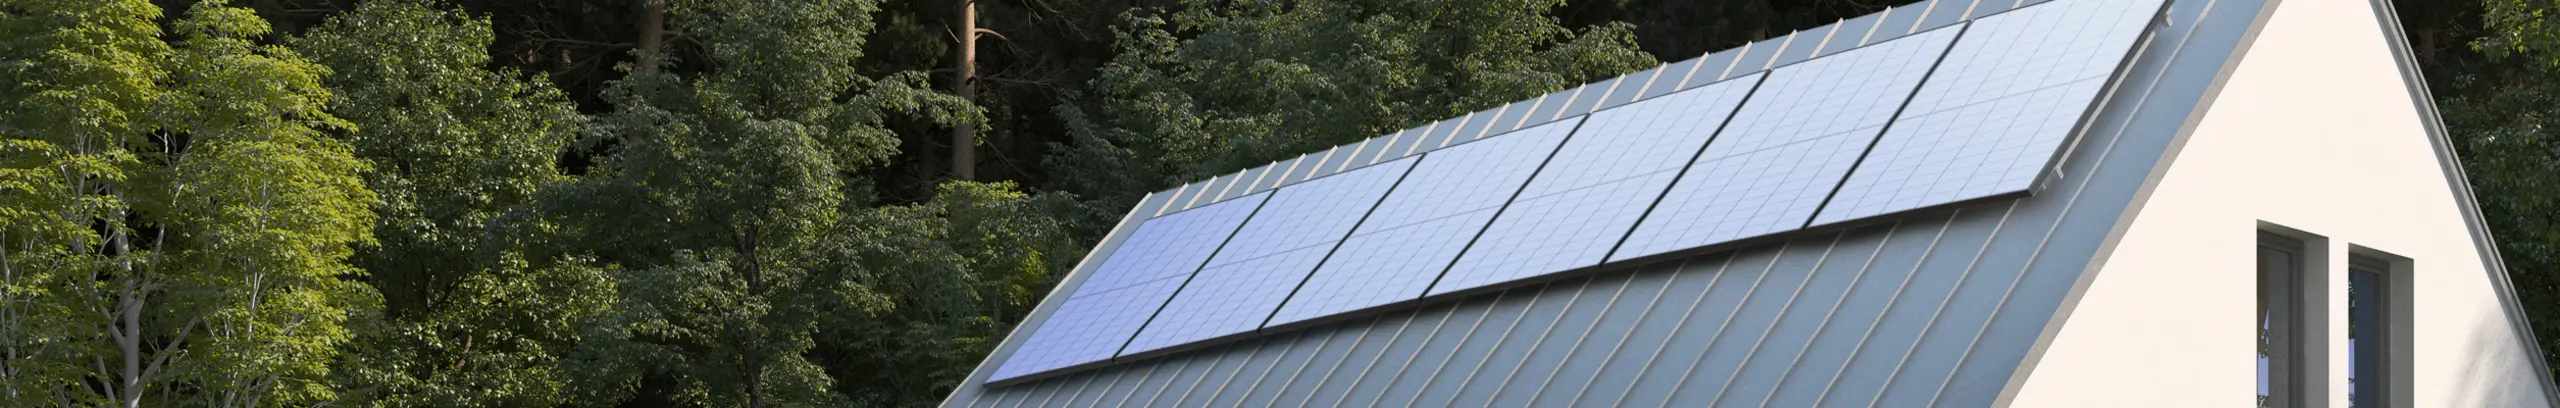 EcoFlow Rigidni Solarni Paneli Top Ponuda